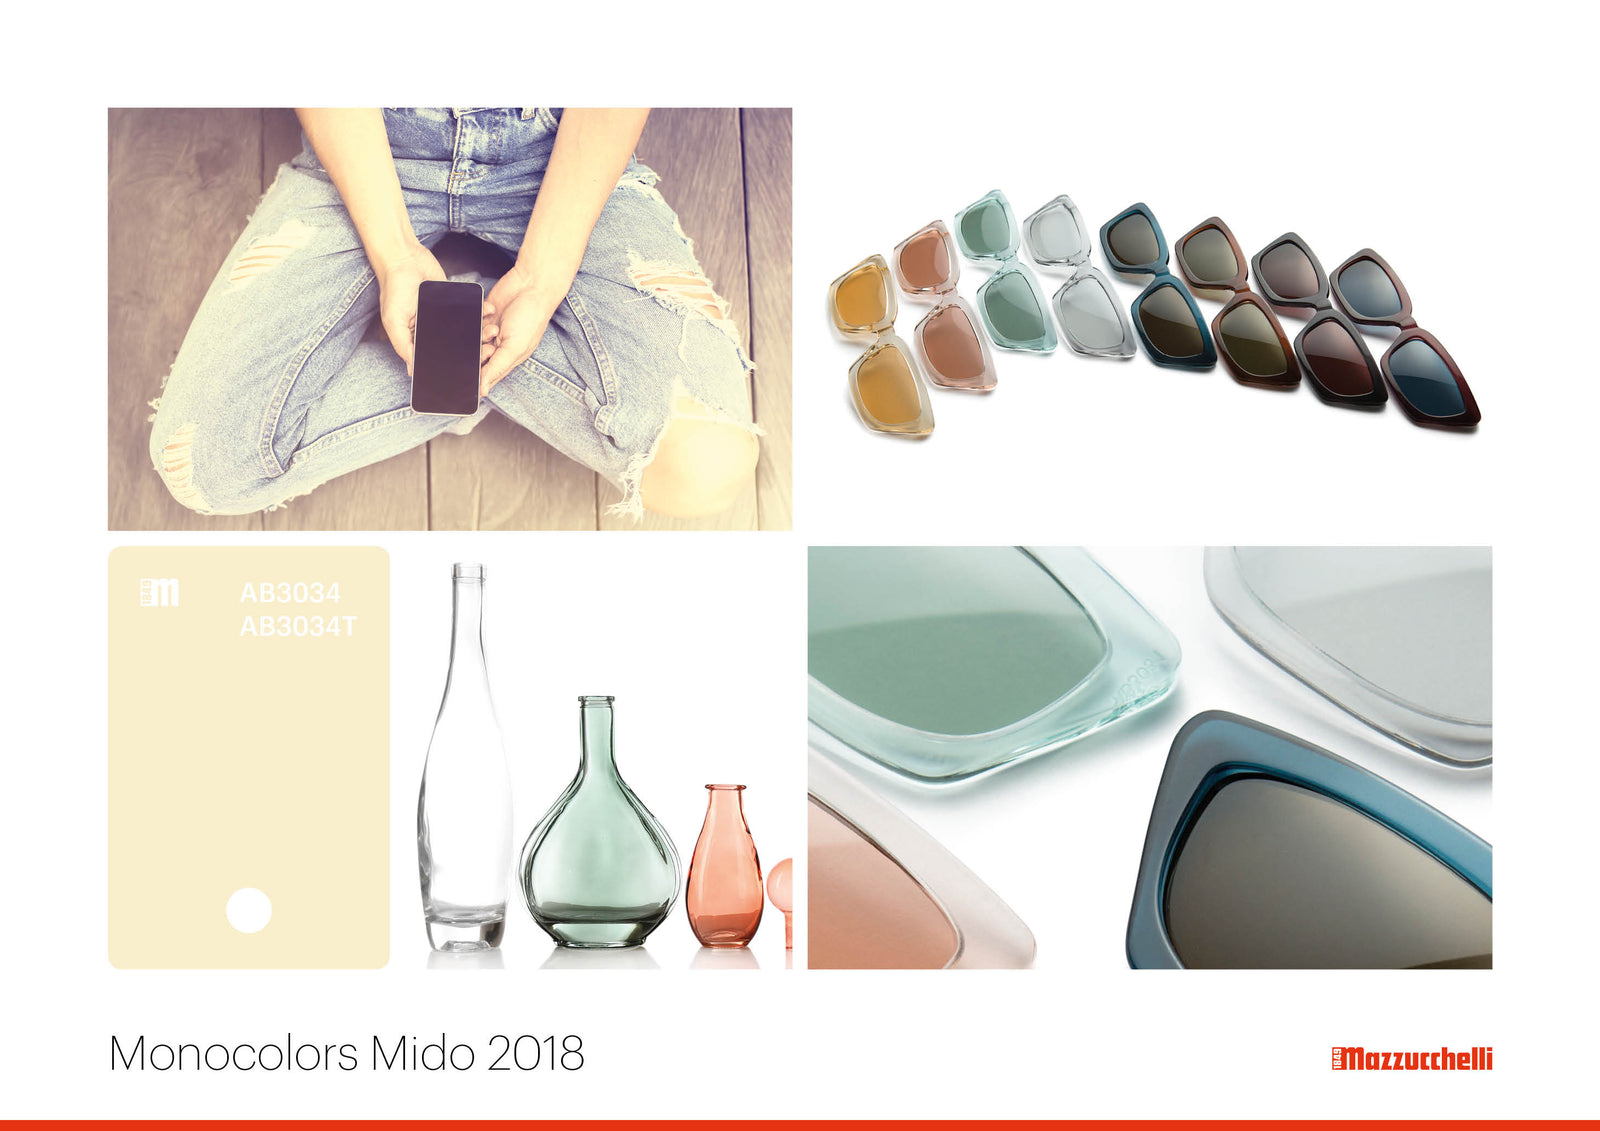 Monocolors Mido 2018 | Mazzucchelli 1849